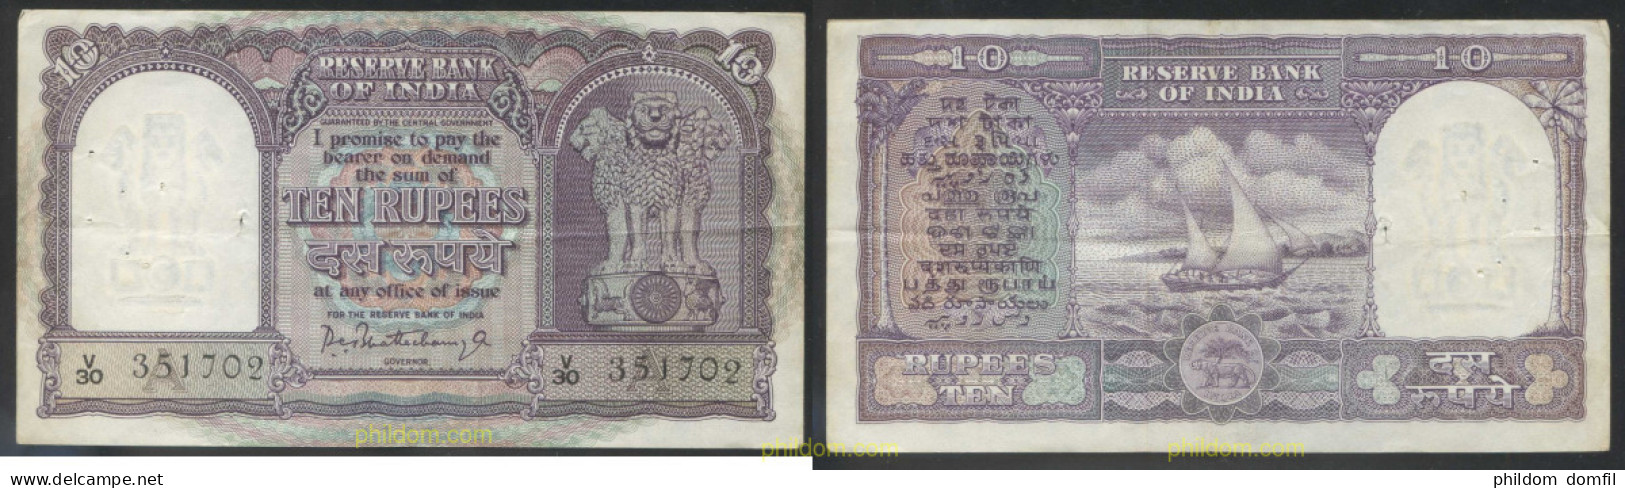 4610 INDIA 1967 INDIA 10 RUPEES 1967 - Indien